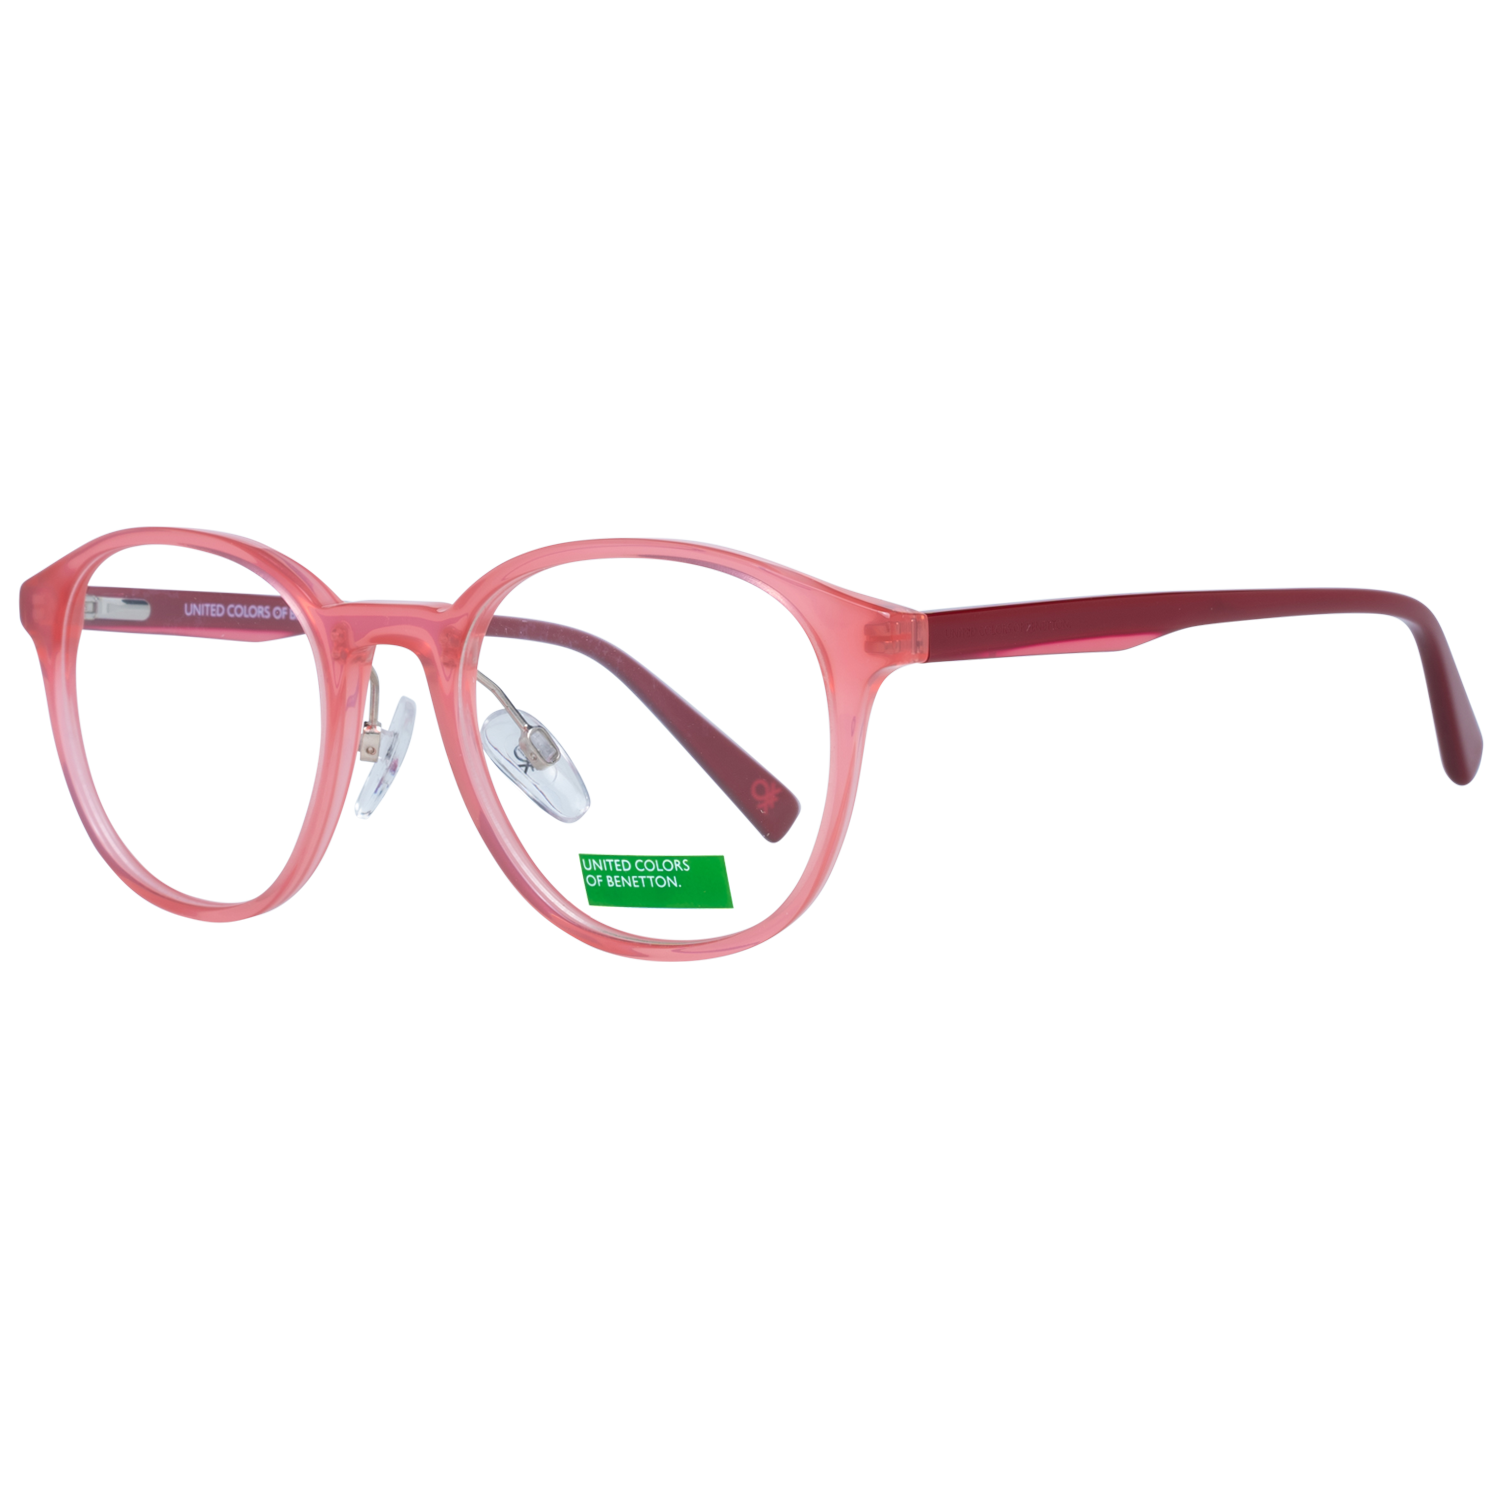 Benetton Frames Benetton Glasses Frames BEO1007 283 48 Eyeglasses Eyewear UK USA Australia 